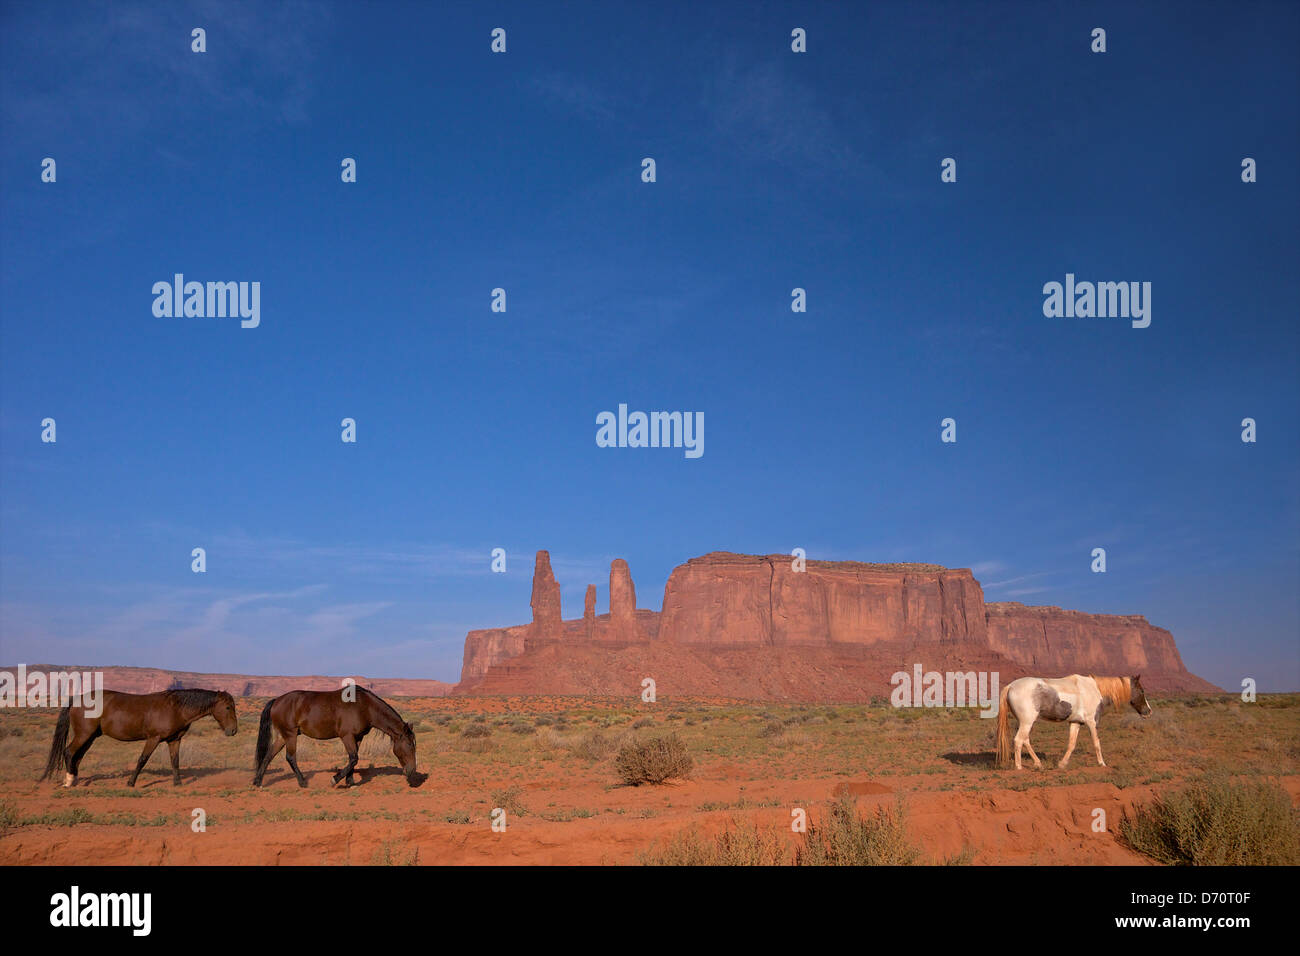 Estados Unidos, Utah, Monument Valley Navajo Tribal Park, formación rocosa y caballos Foto de stock